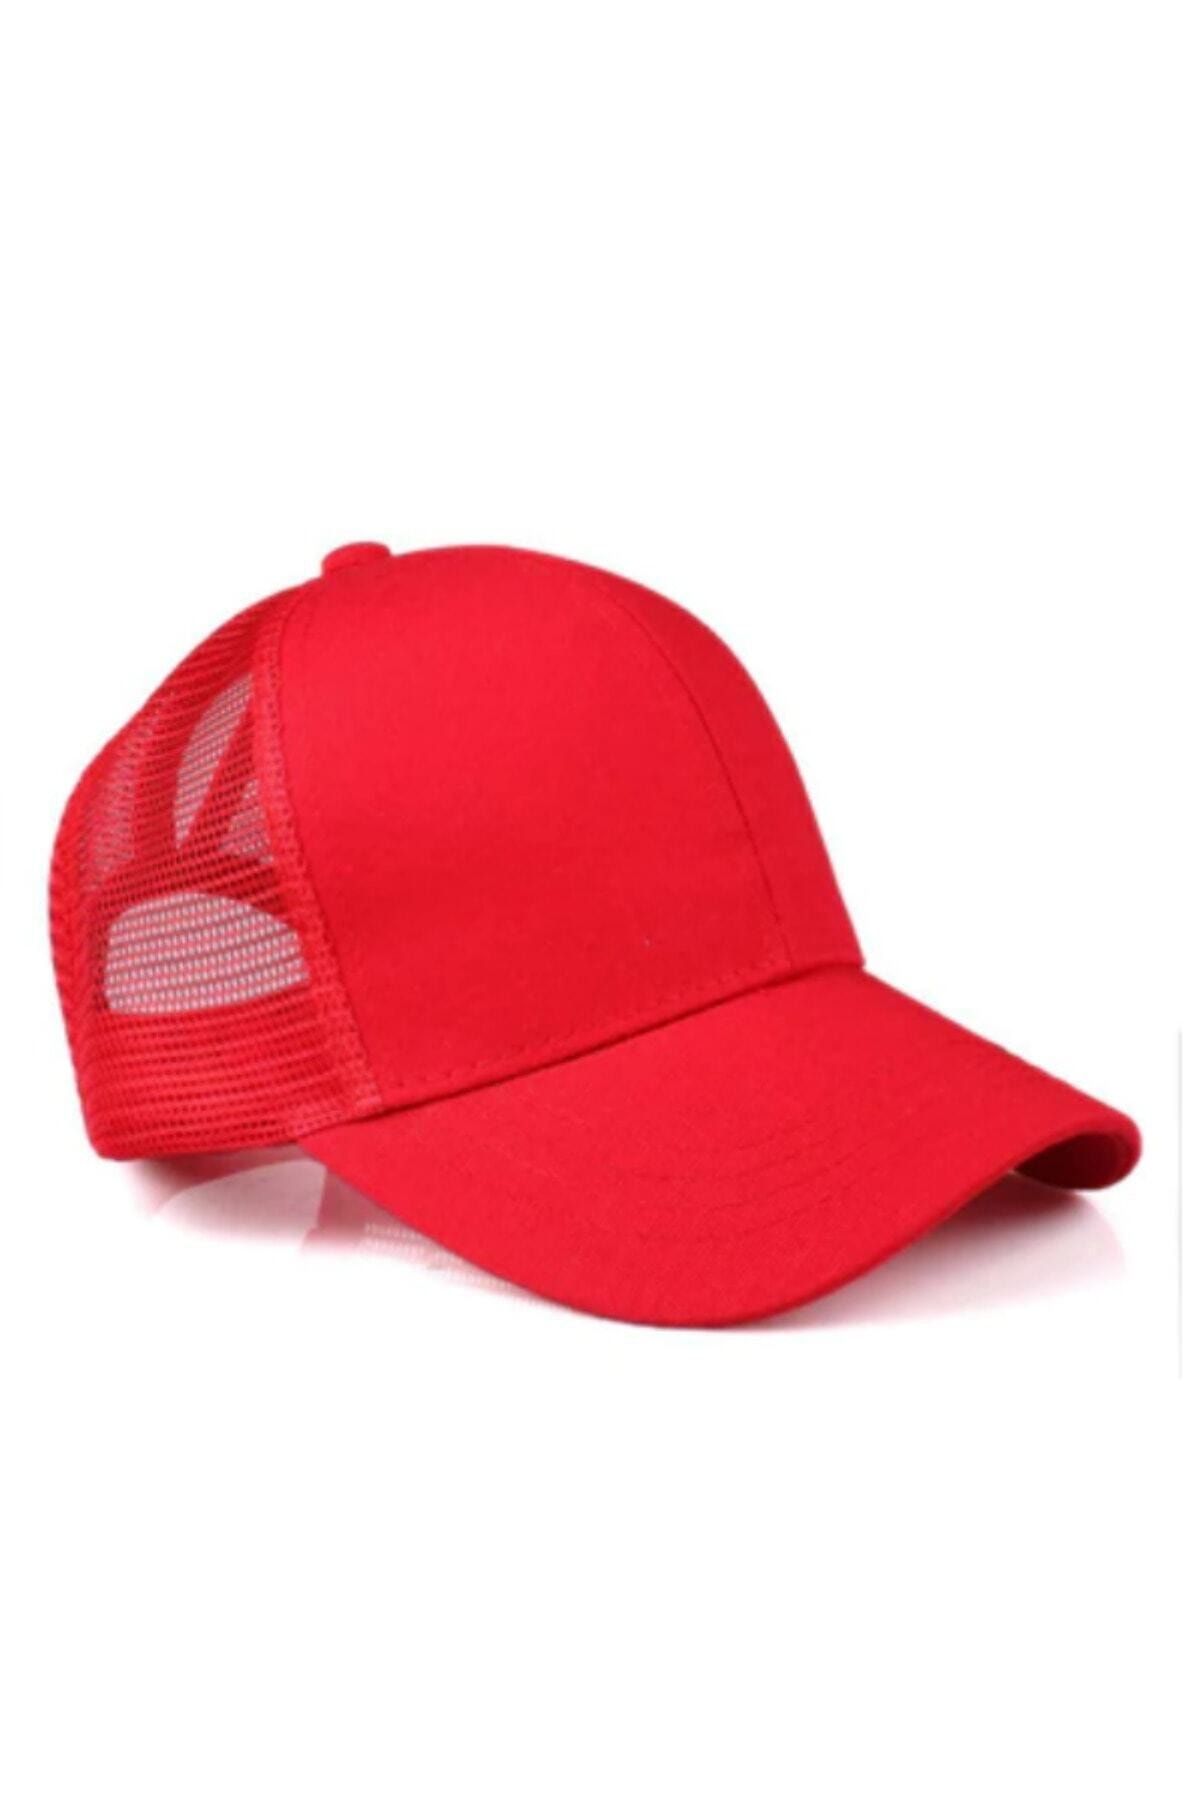 PRC şapka Yazlık Örme Fileli Düz Renk 6 Parça Arkası Ayaralanabilir Şapka Kepler Yazlık Örme Fileli Şapka